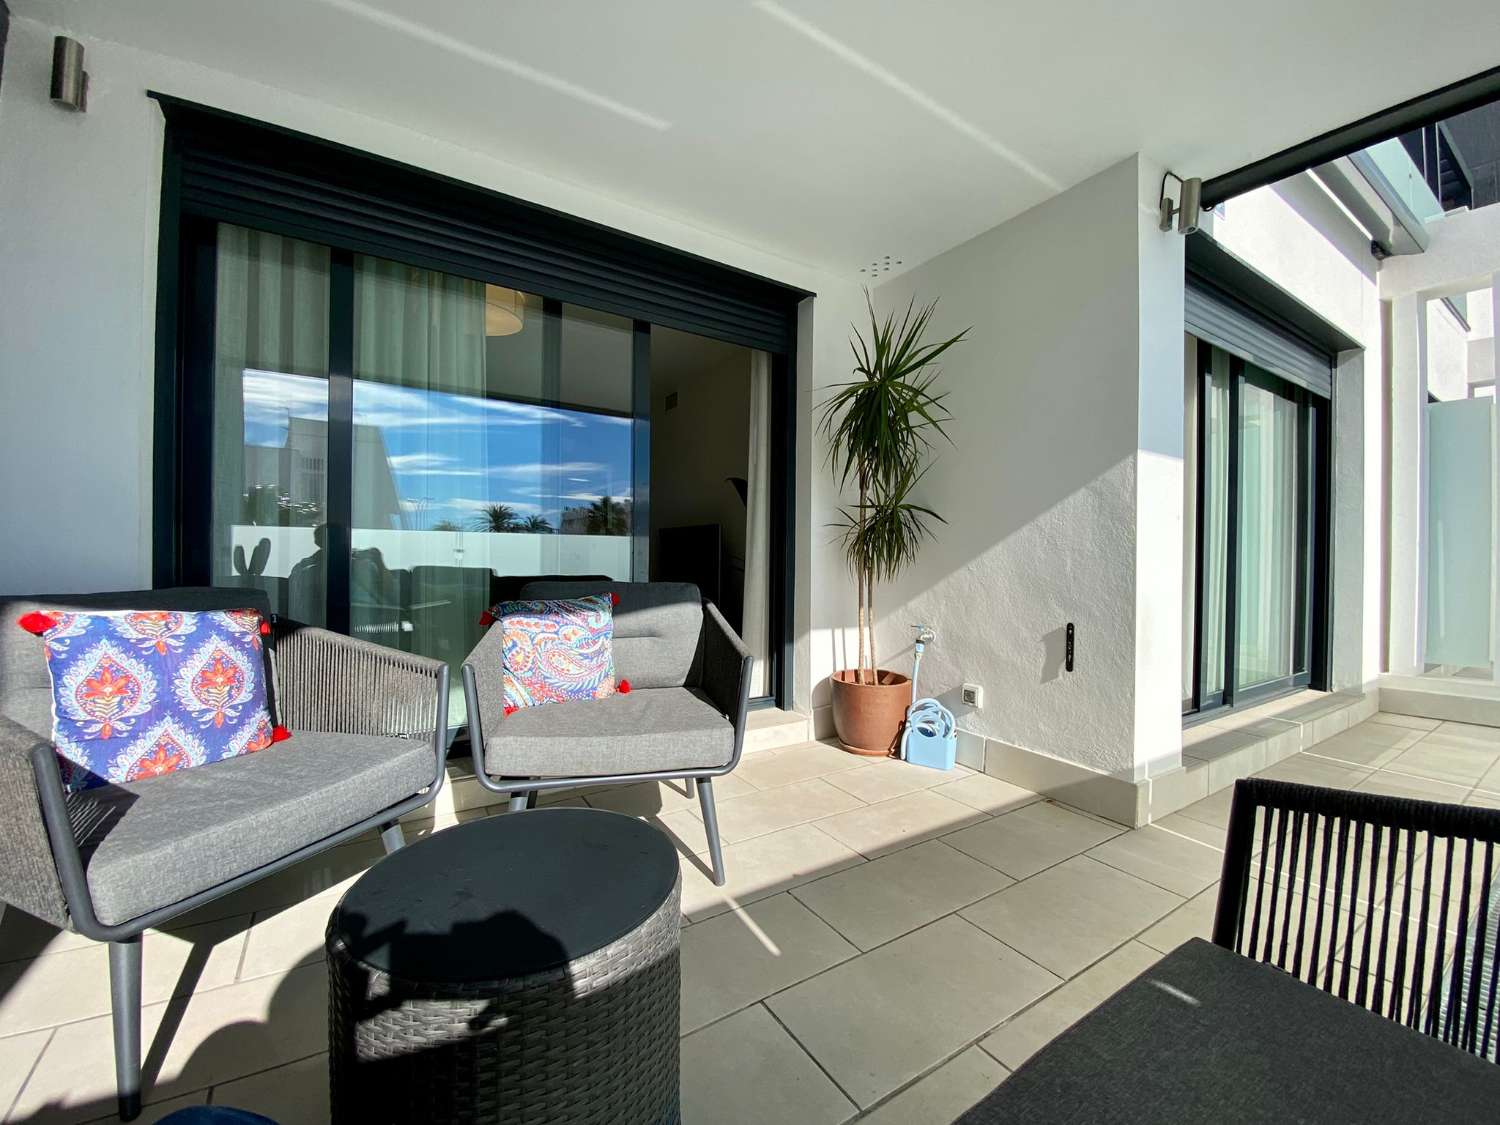 Appartement de deux chambres, avec terrasse et piscine commune à côté de la plage de Puerto de la Caleta